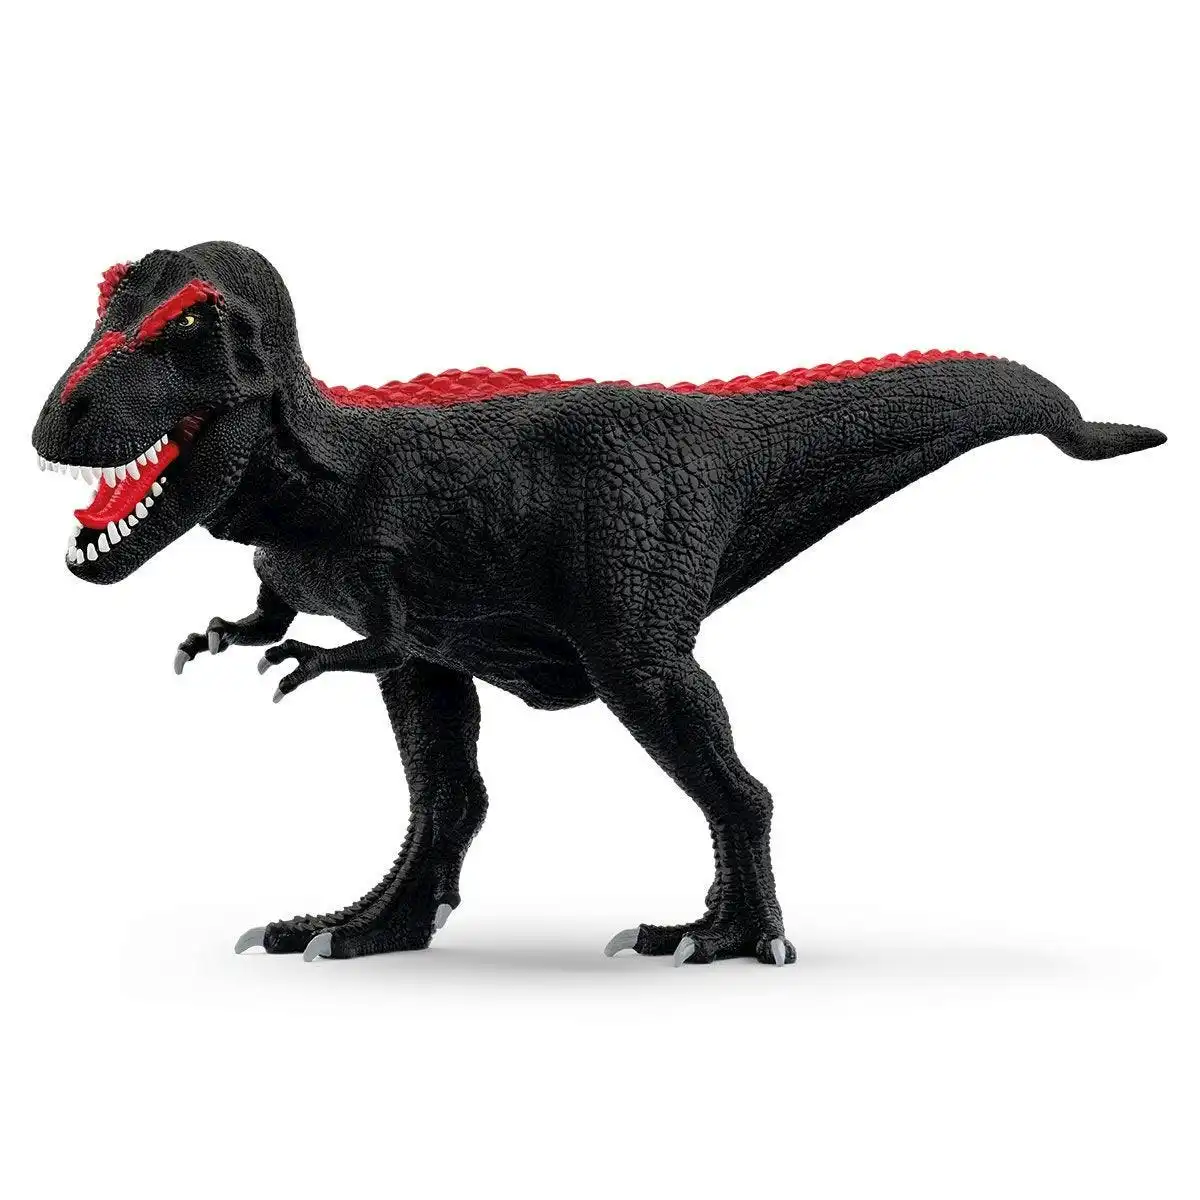 Schleich - Limited-Edition Midnight T-Rex Dinosaur Figurine